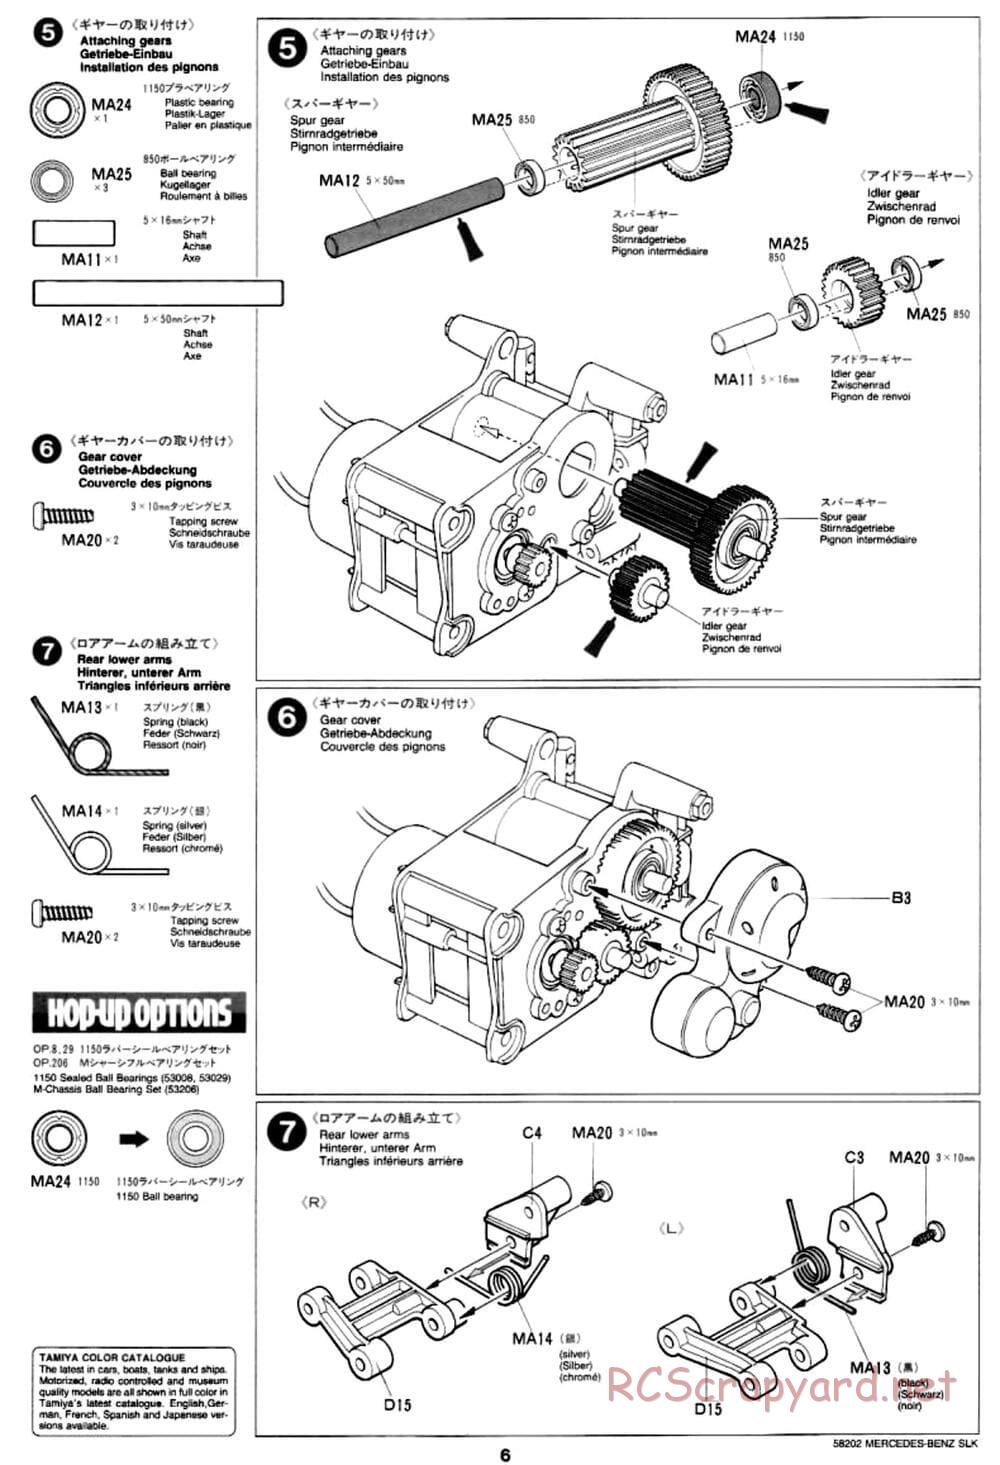 Tamiya - Mercedes-Benz SLK - M02L Chassis - Manual - Page 6